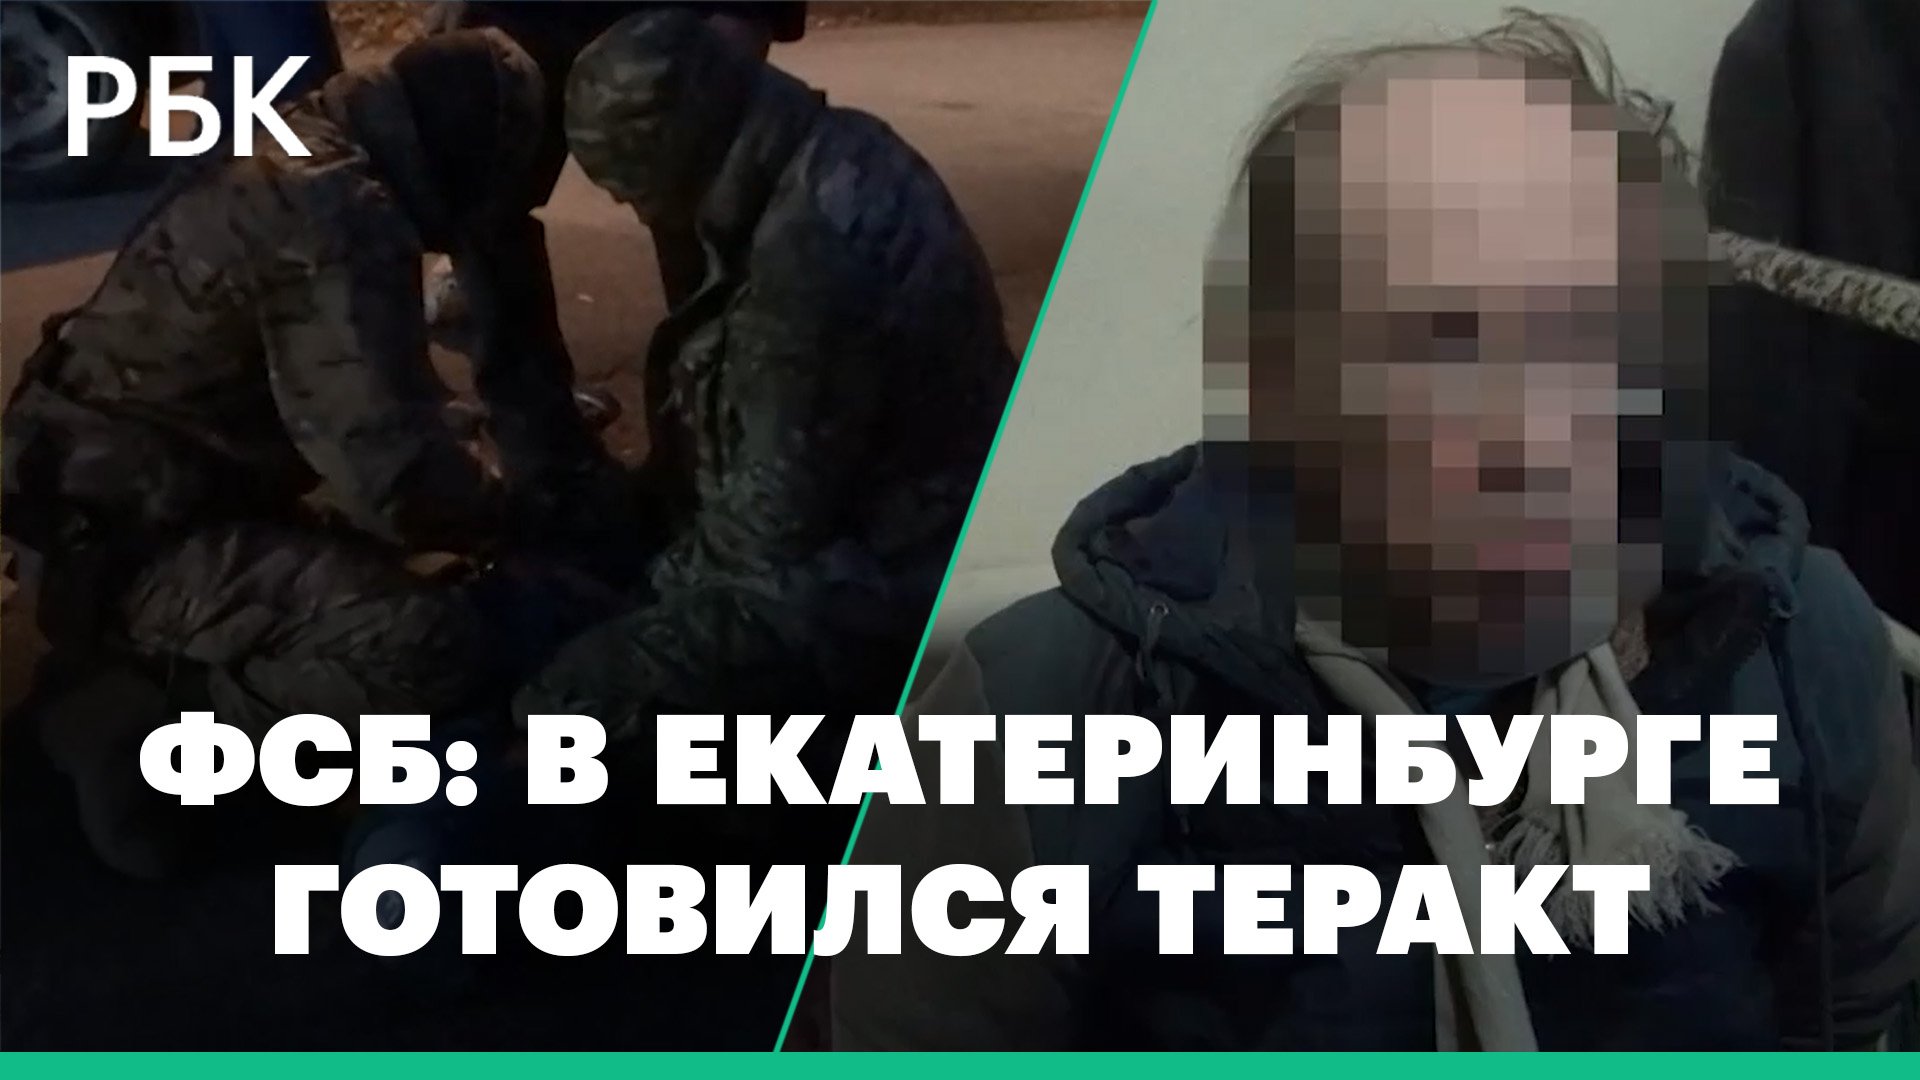 Кадры задержания ФСБ готовившего теракт в военкомате в Екатеринбурге